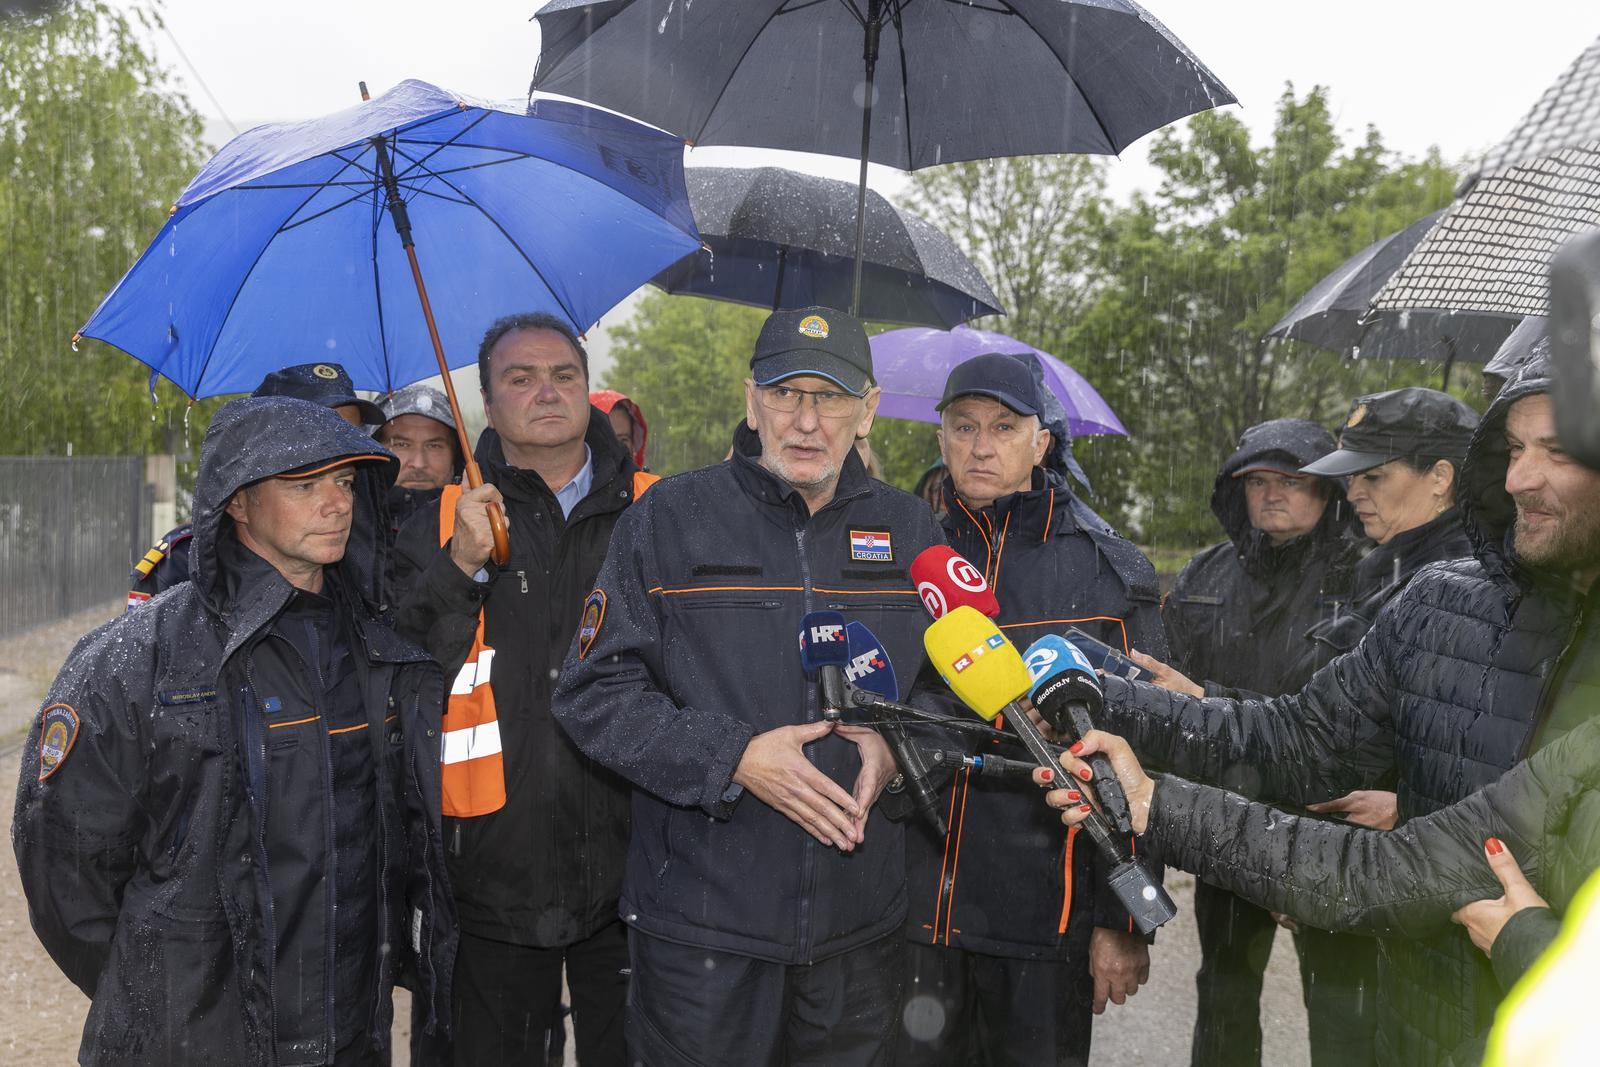 16.05.2023., Gracac - Potpredsjednik Vlade i ministar unutarnjih poslova Davor Bozinovic posjetio je Gracac i obisap poplavljeno podrucje. Photo: Nikola Mravovic/PIXSELL